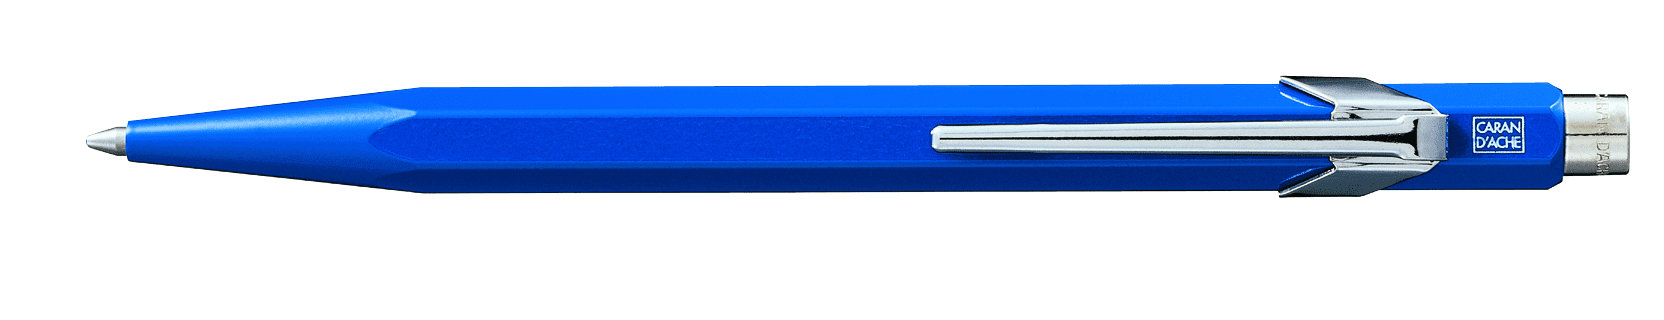 Ballpoint Pen Sapphire Blue 849.150 New! Caran D'ache Metal Collection 